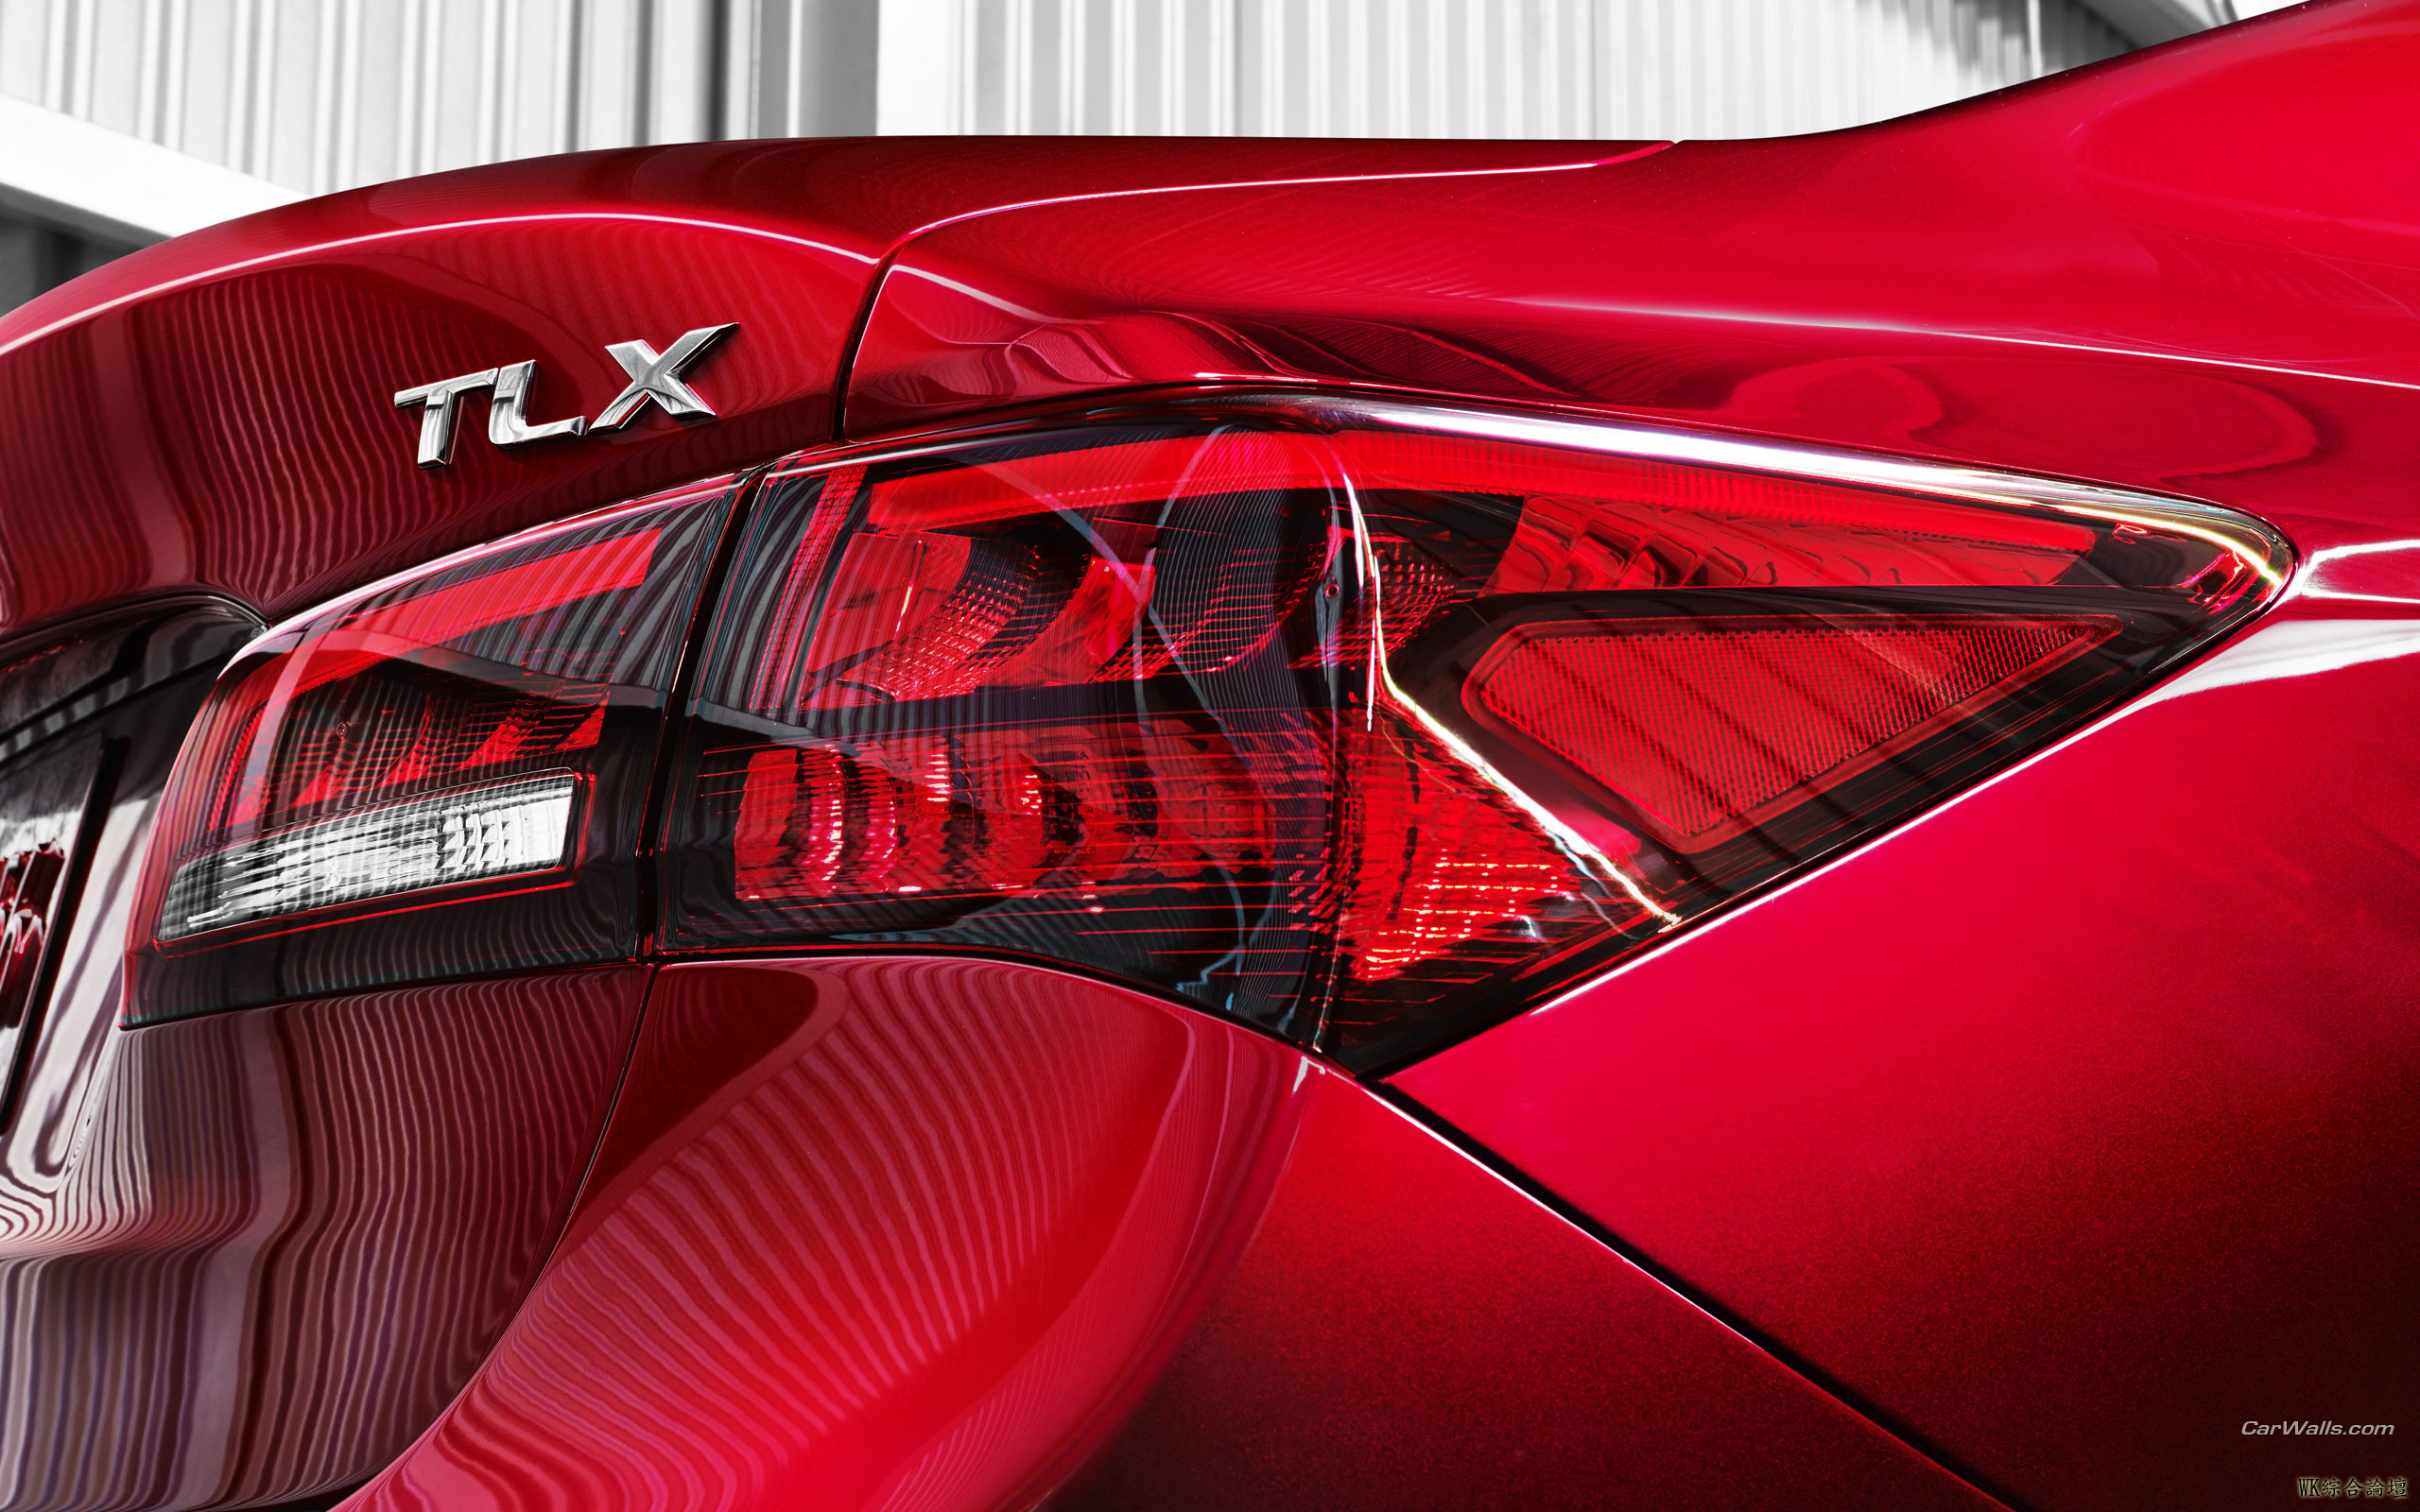 Acura_2014-TLX_Concept_007_2560x1600.jpg